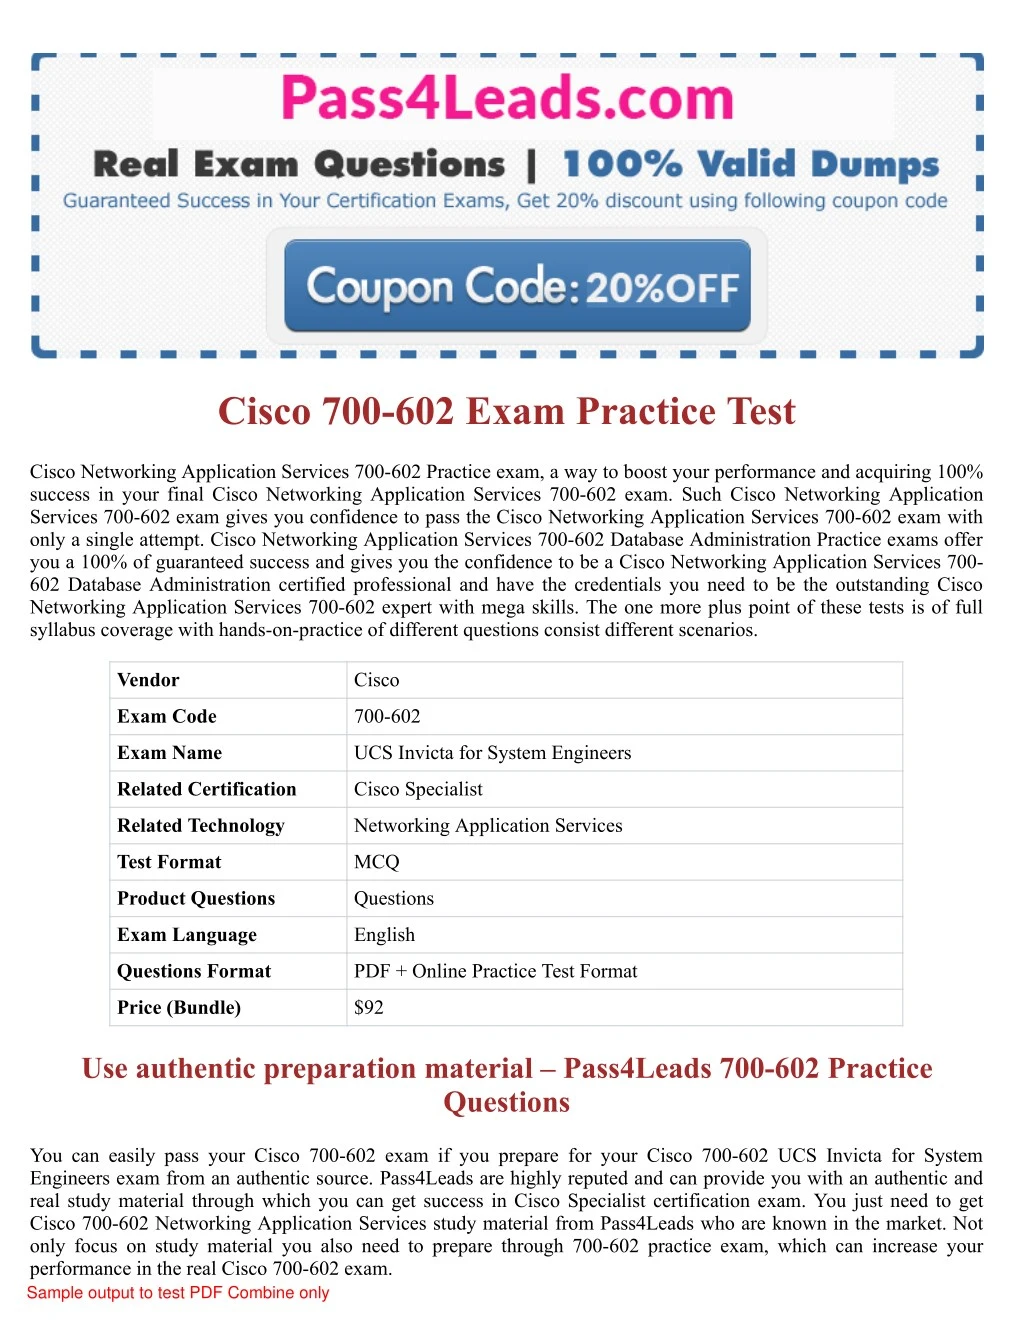 cisco 700 602 exam practice test